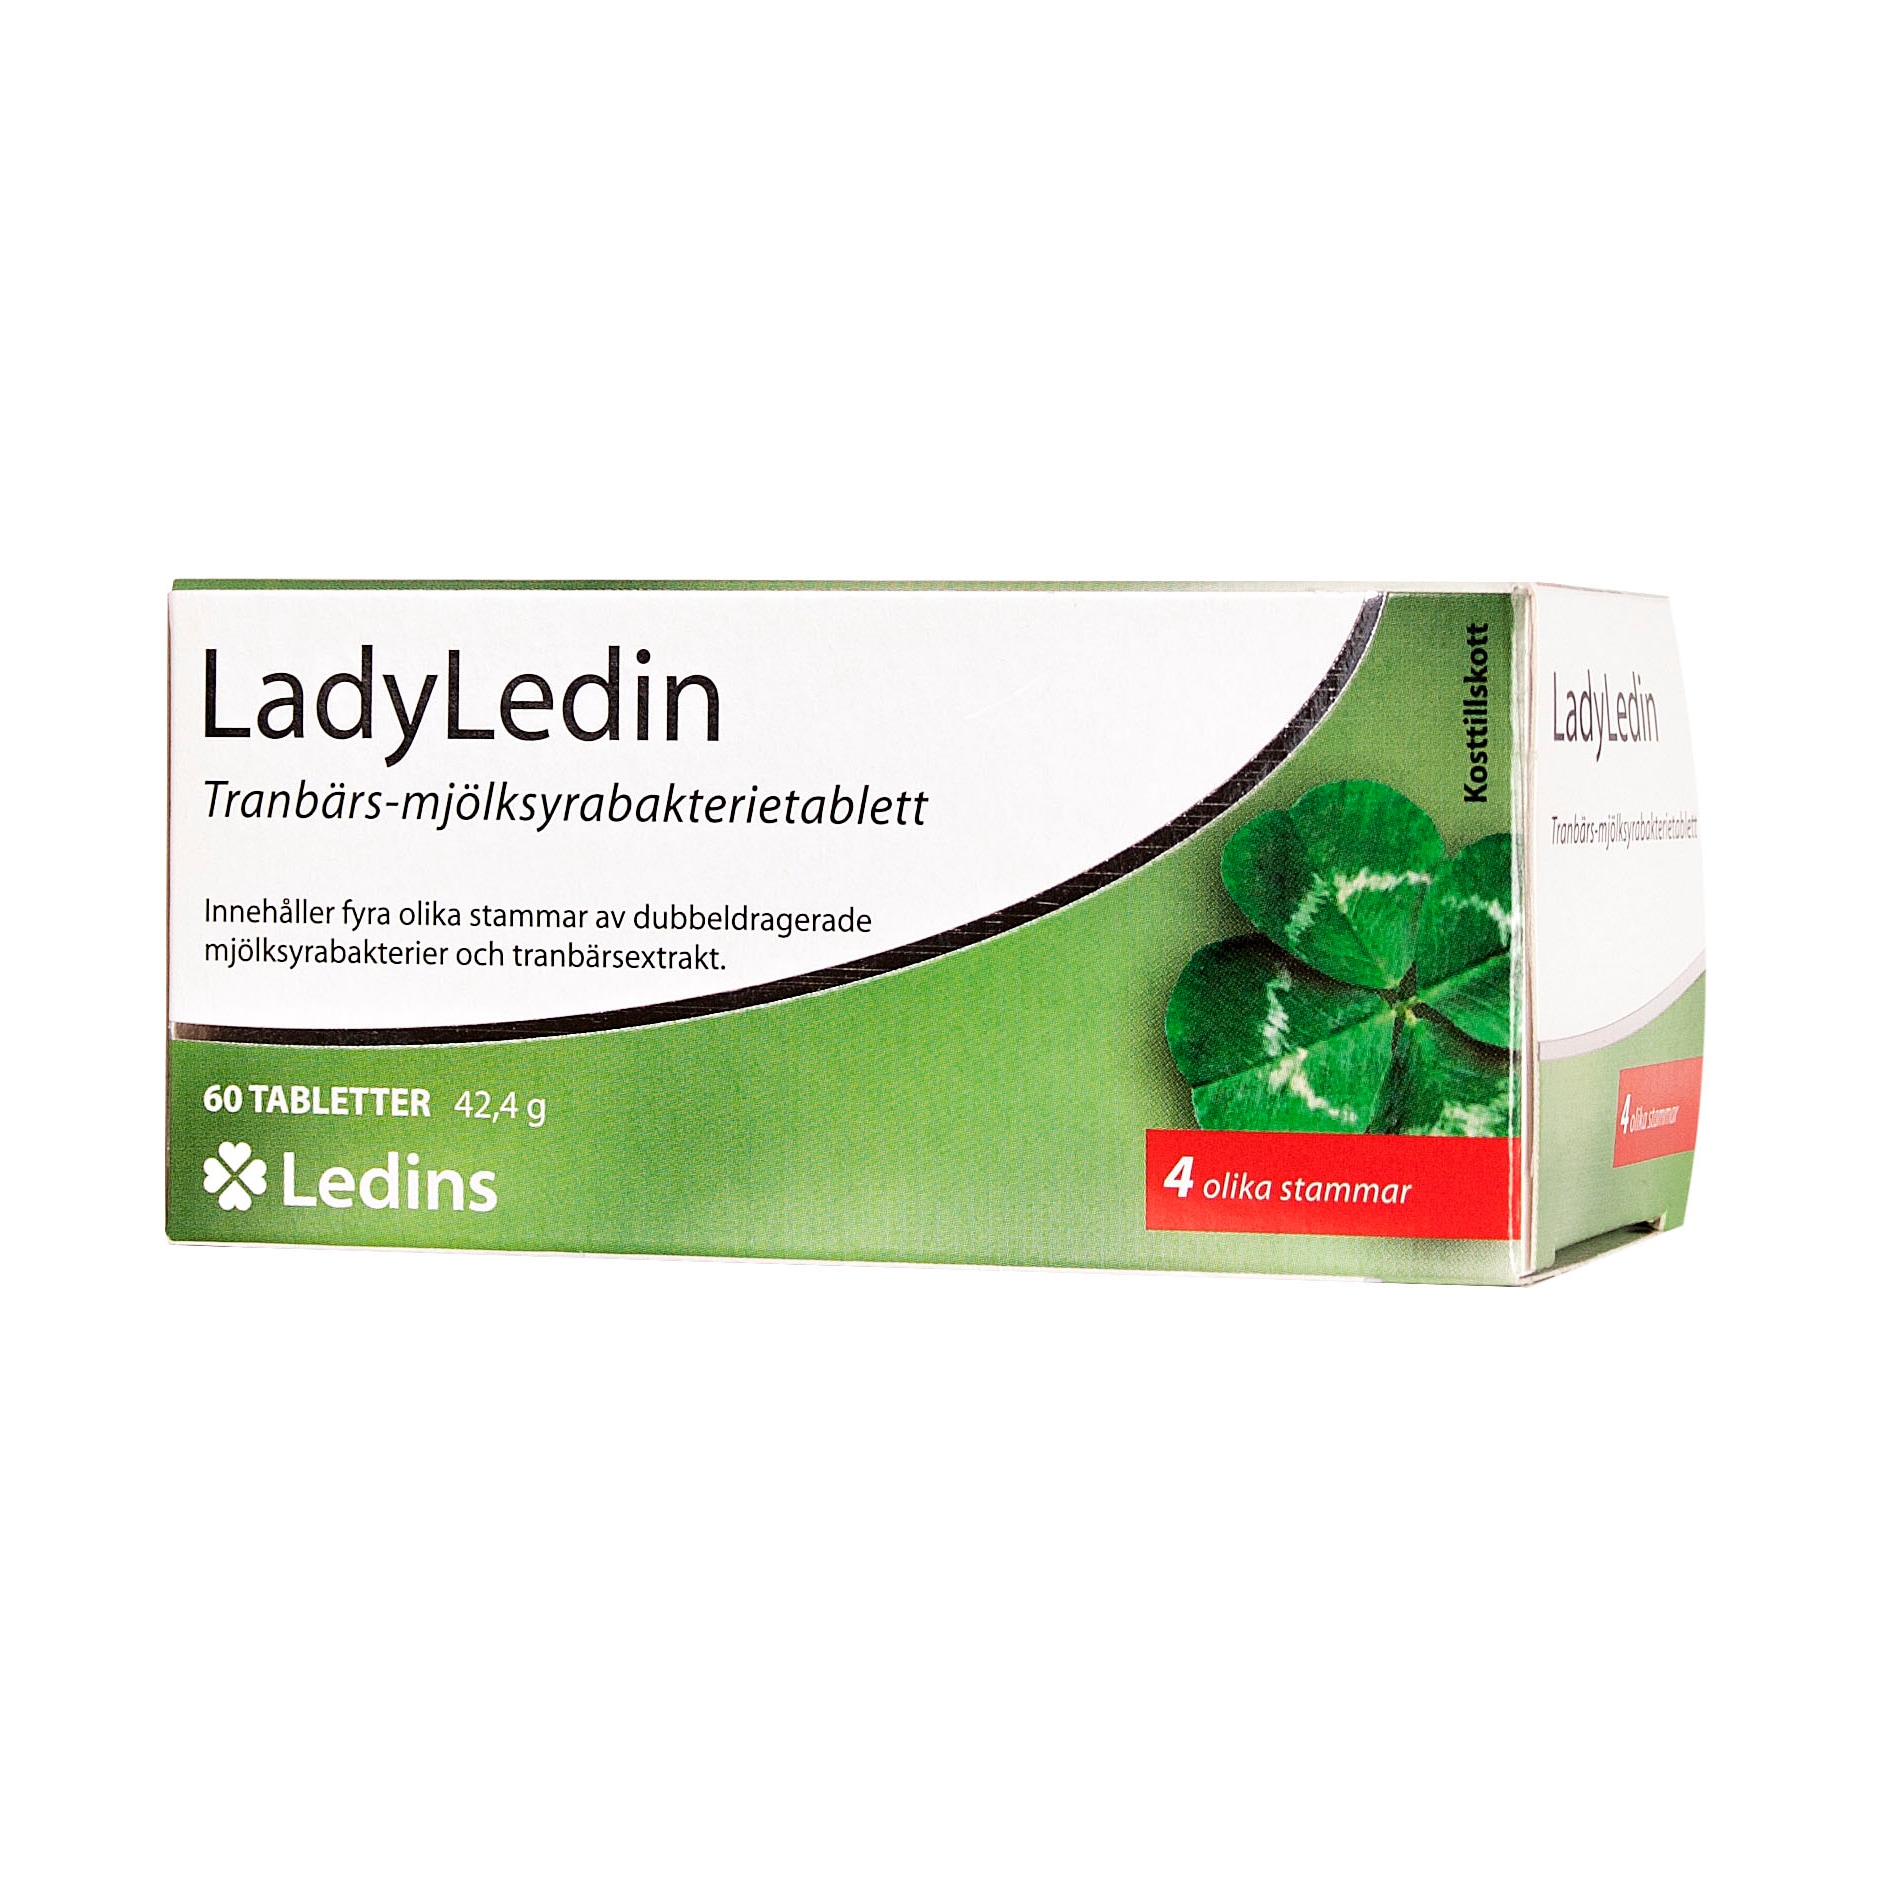 LadyLedin 60 tabletter